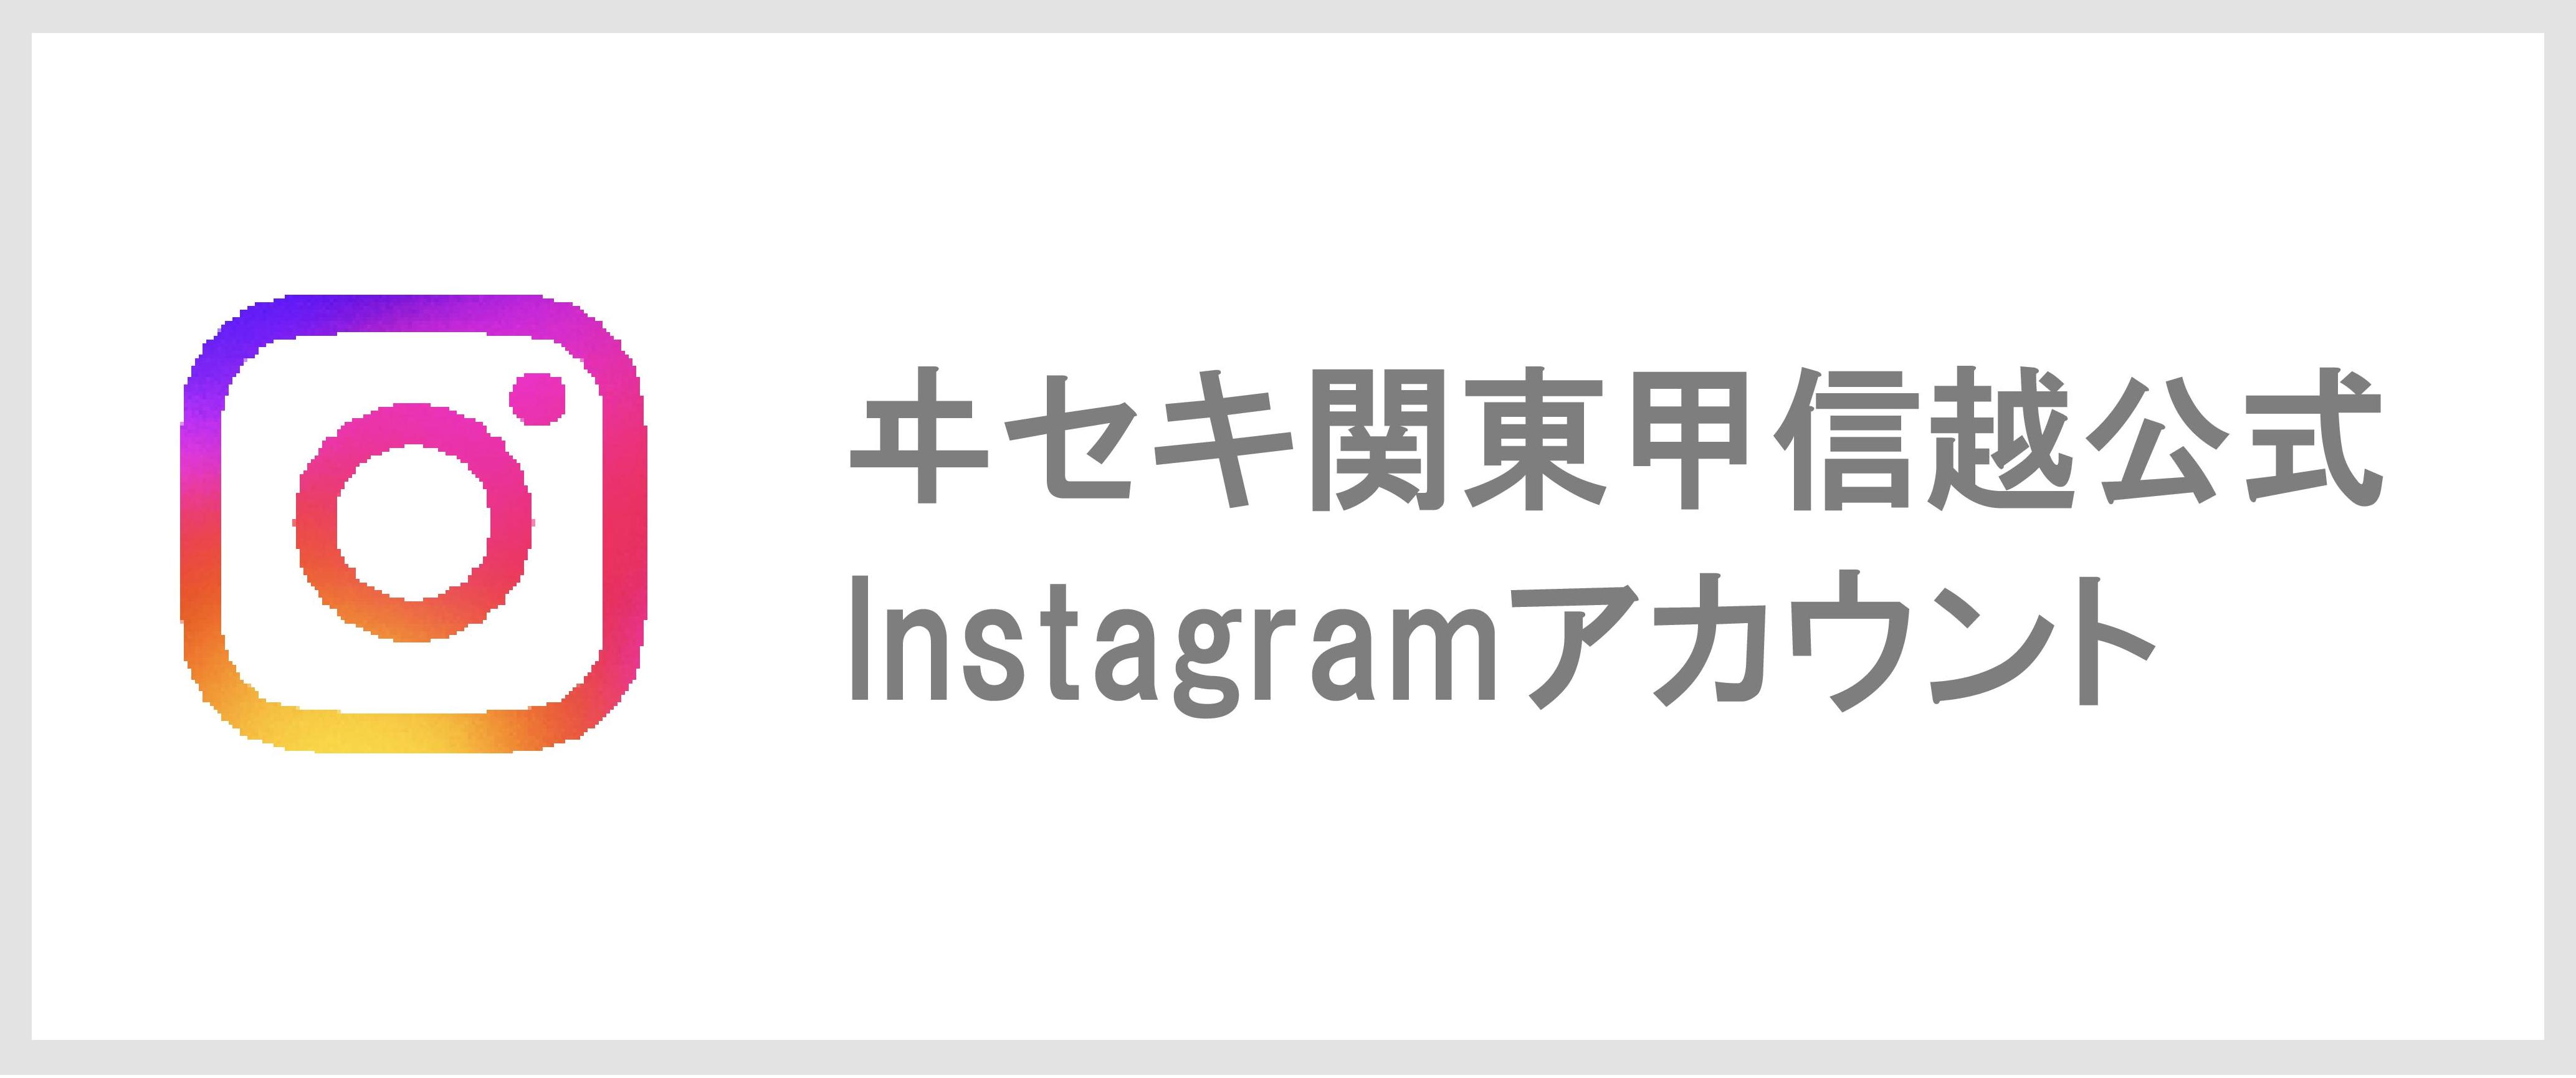 ヰセキ関東甲信越 公式Instagramアカウント